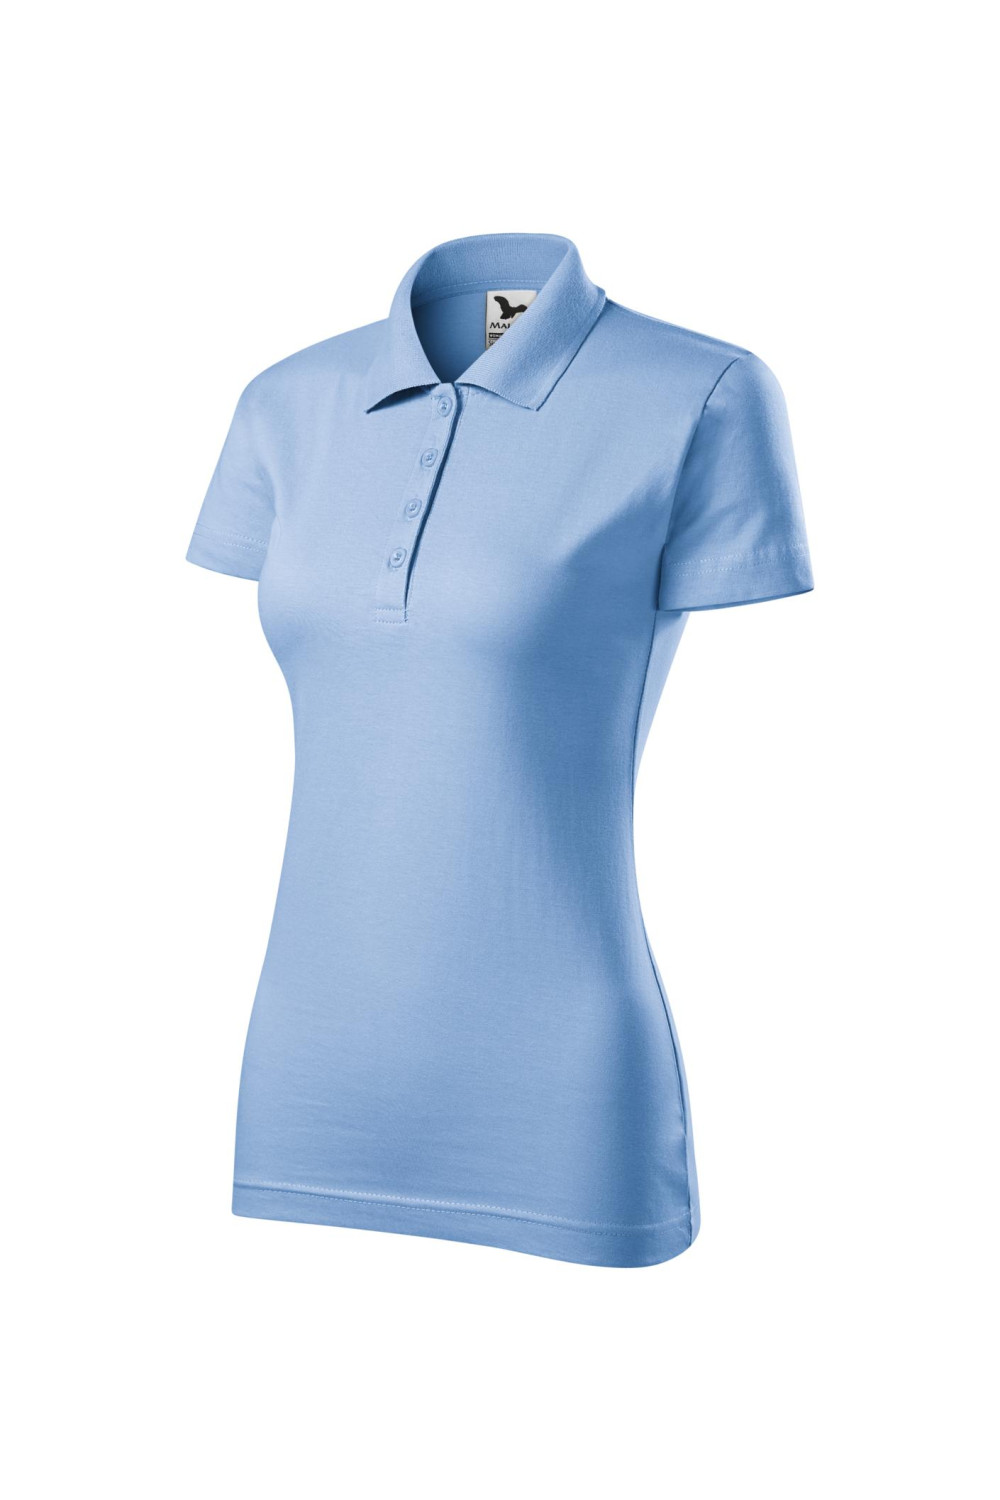 SINGLE J. 223 MALFINI ADLER Koszulka polo damska klasyczna 100% bawełna błękitny